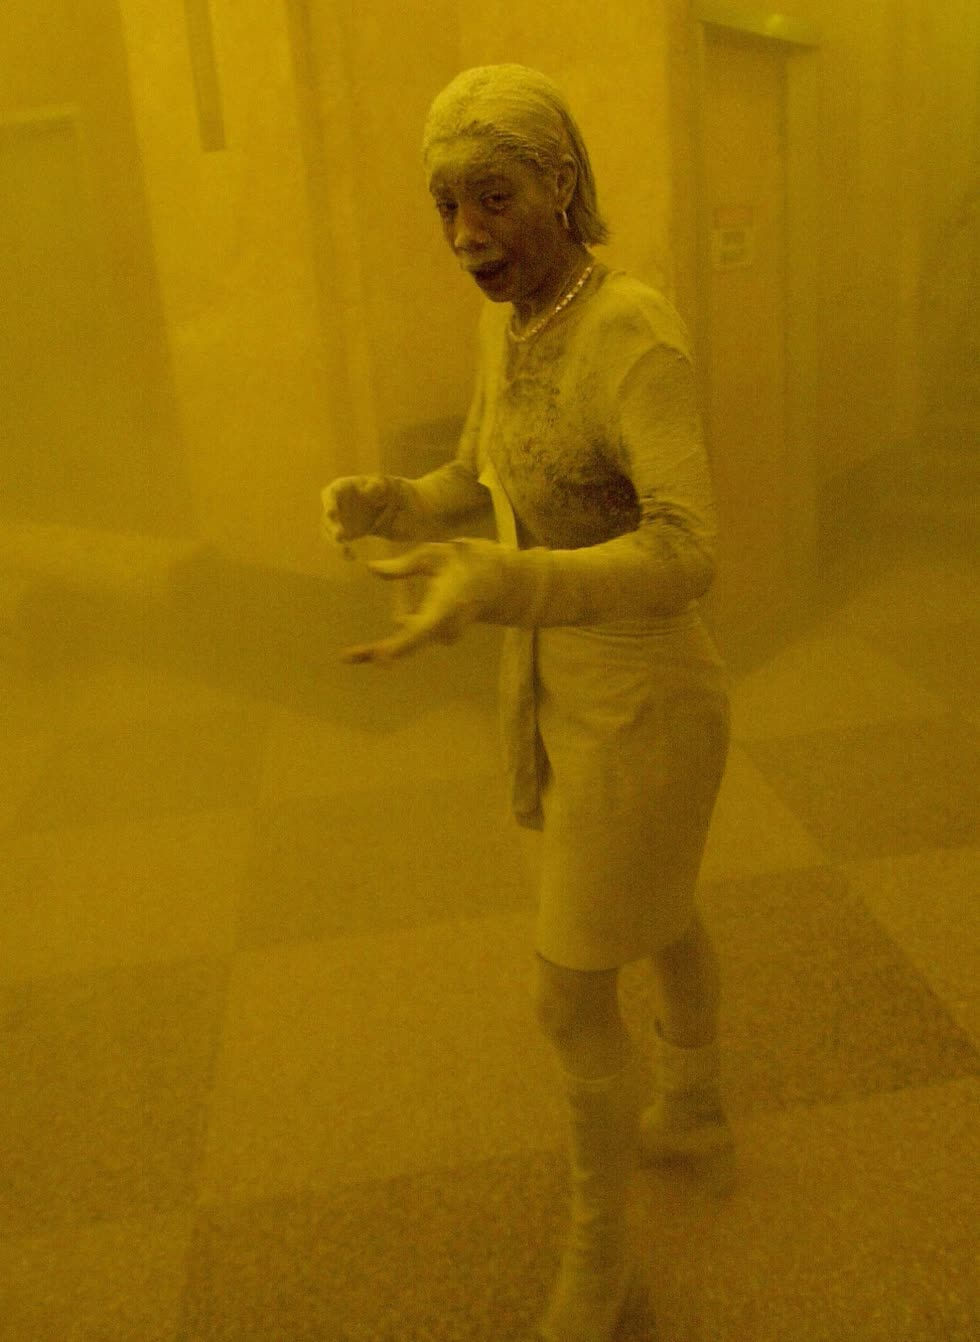 Từ đầu tới chân cô Marcy Borders, một trong những người may mắn thoát khỏi Trung tâm Thương mại Thế giới, bị bụi trắng bao phủ khi tòa nhà sập. Ảnh: Getty Images